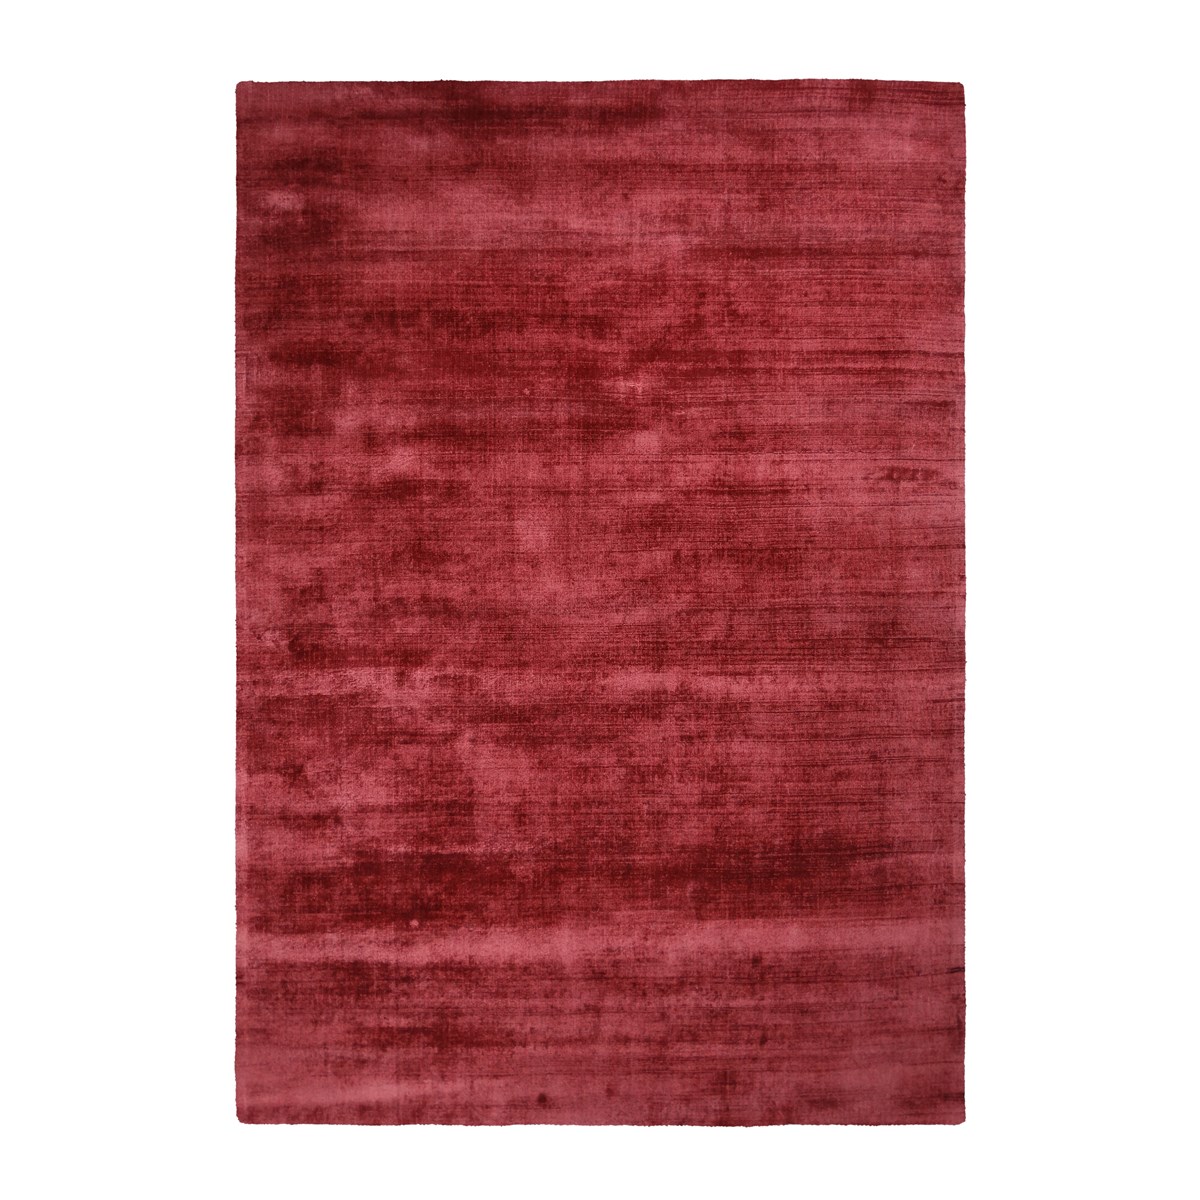 Tapis moderne en Viscose Rose rouge 200x290 cm